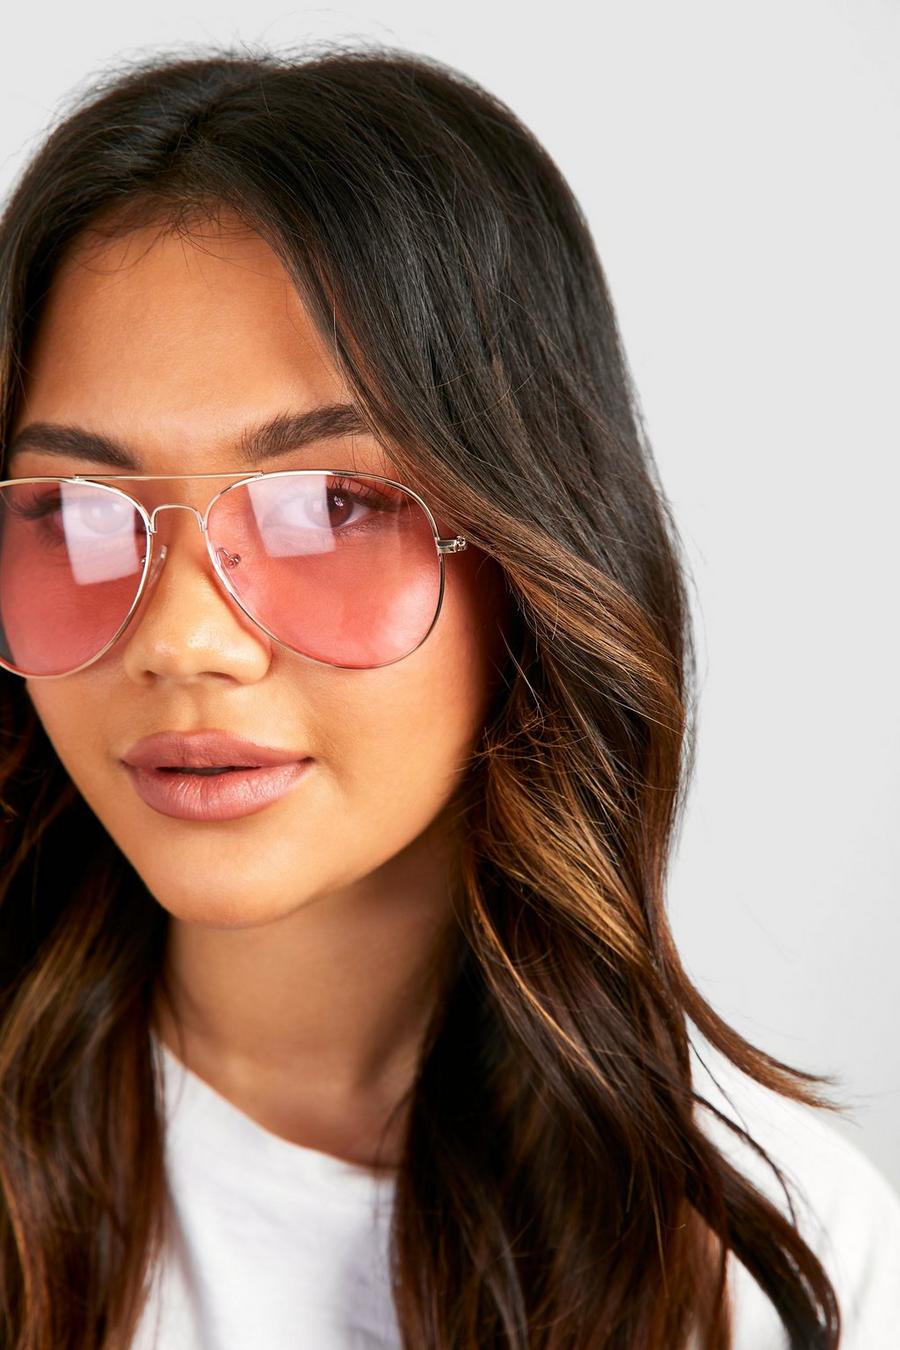 Women's Pink Aviator Sunglasses